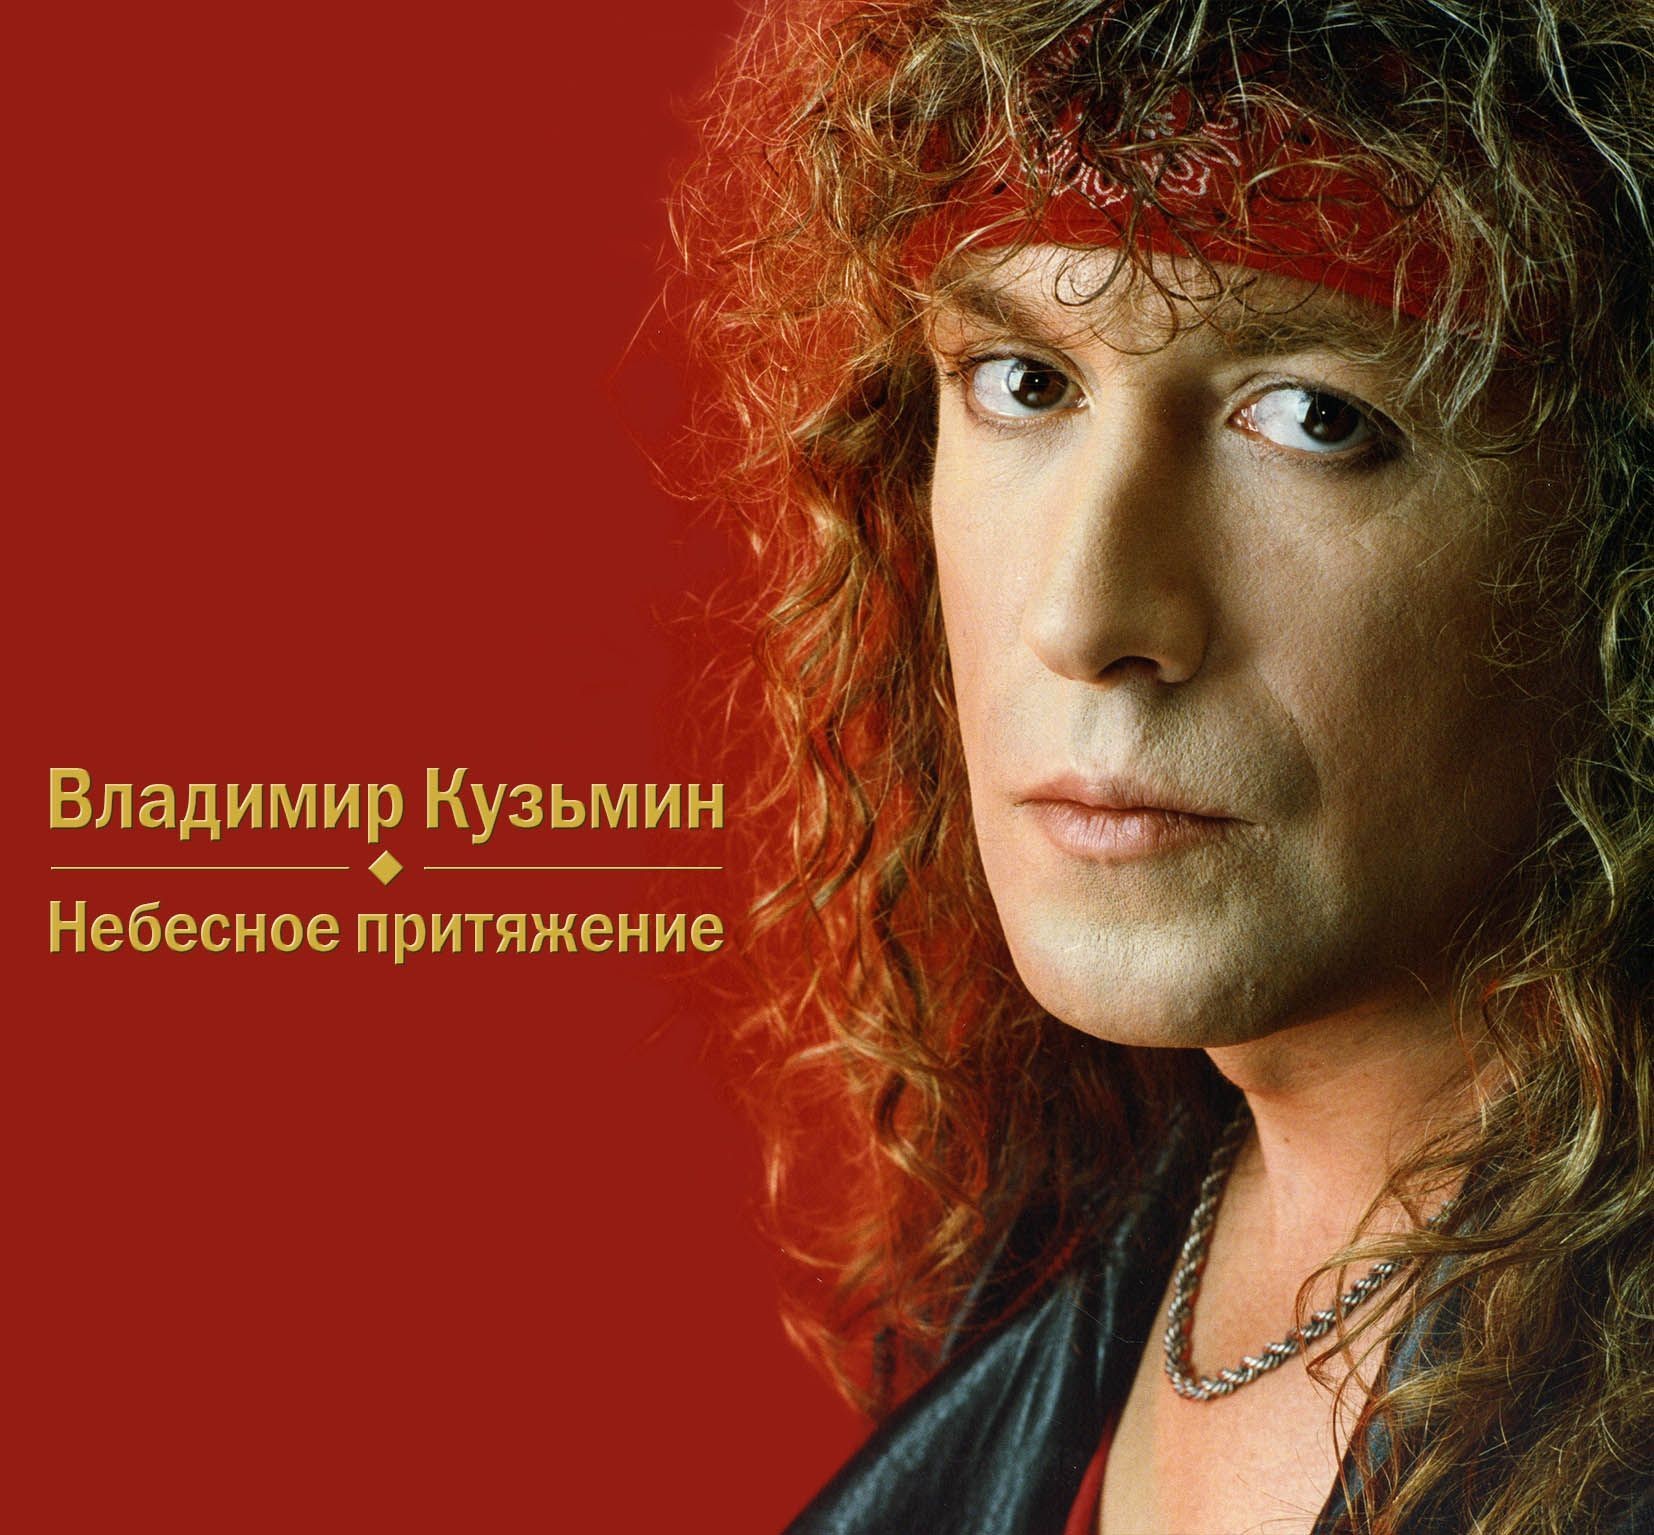 Владимир Кузьмин – Небесное притяжение (CD)